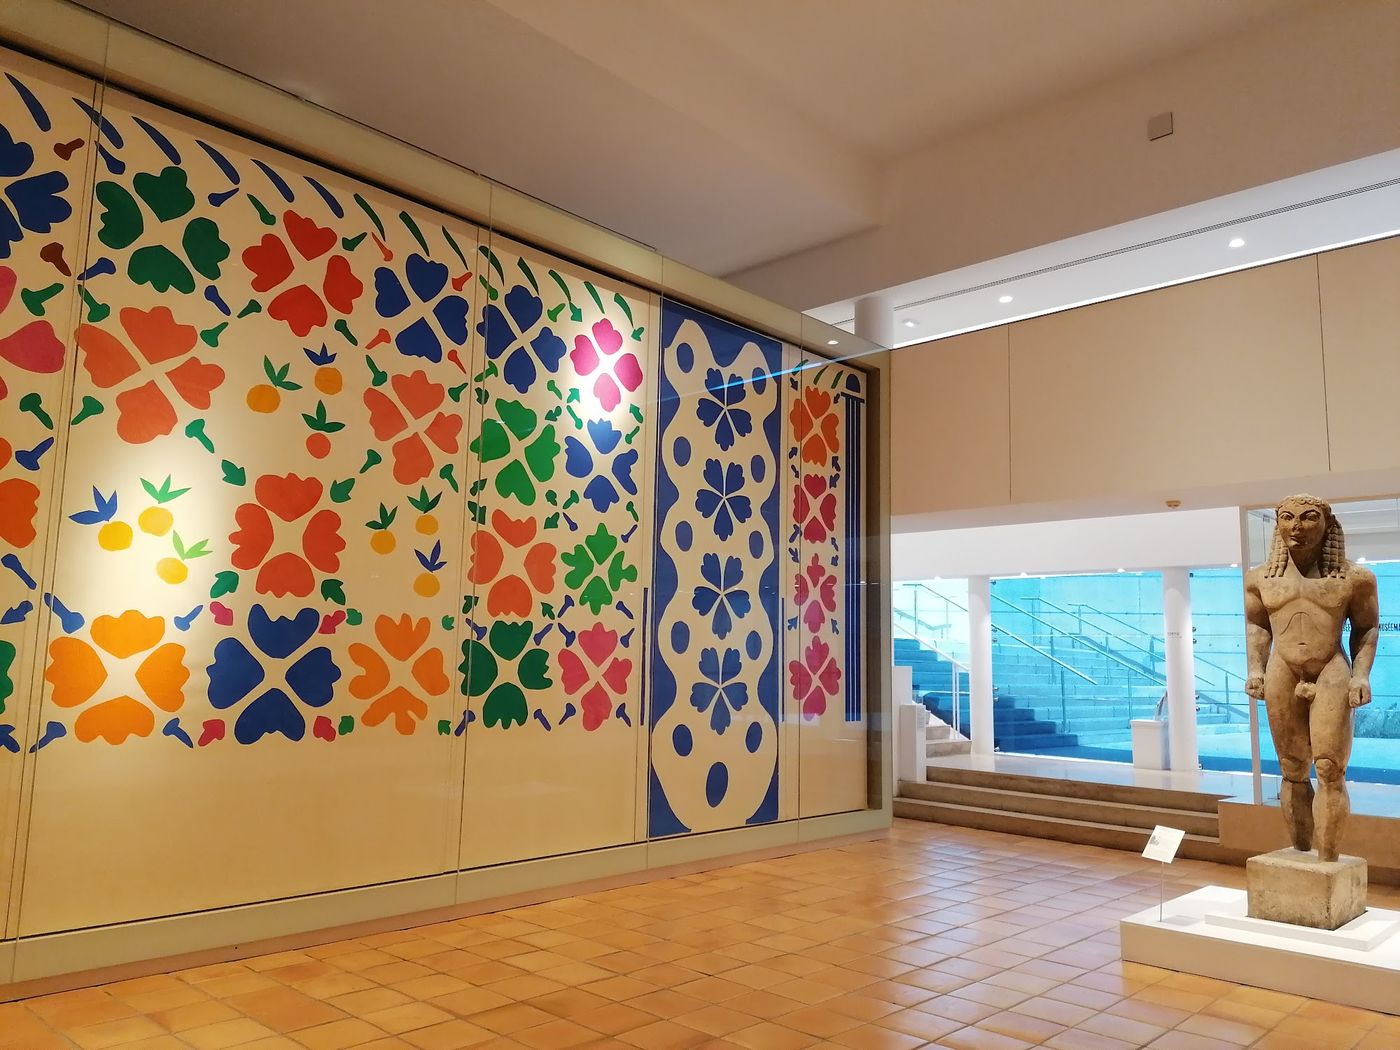 Matisse's Meisterwerke in Nizza